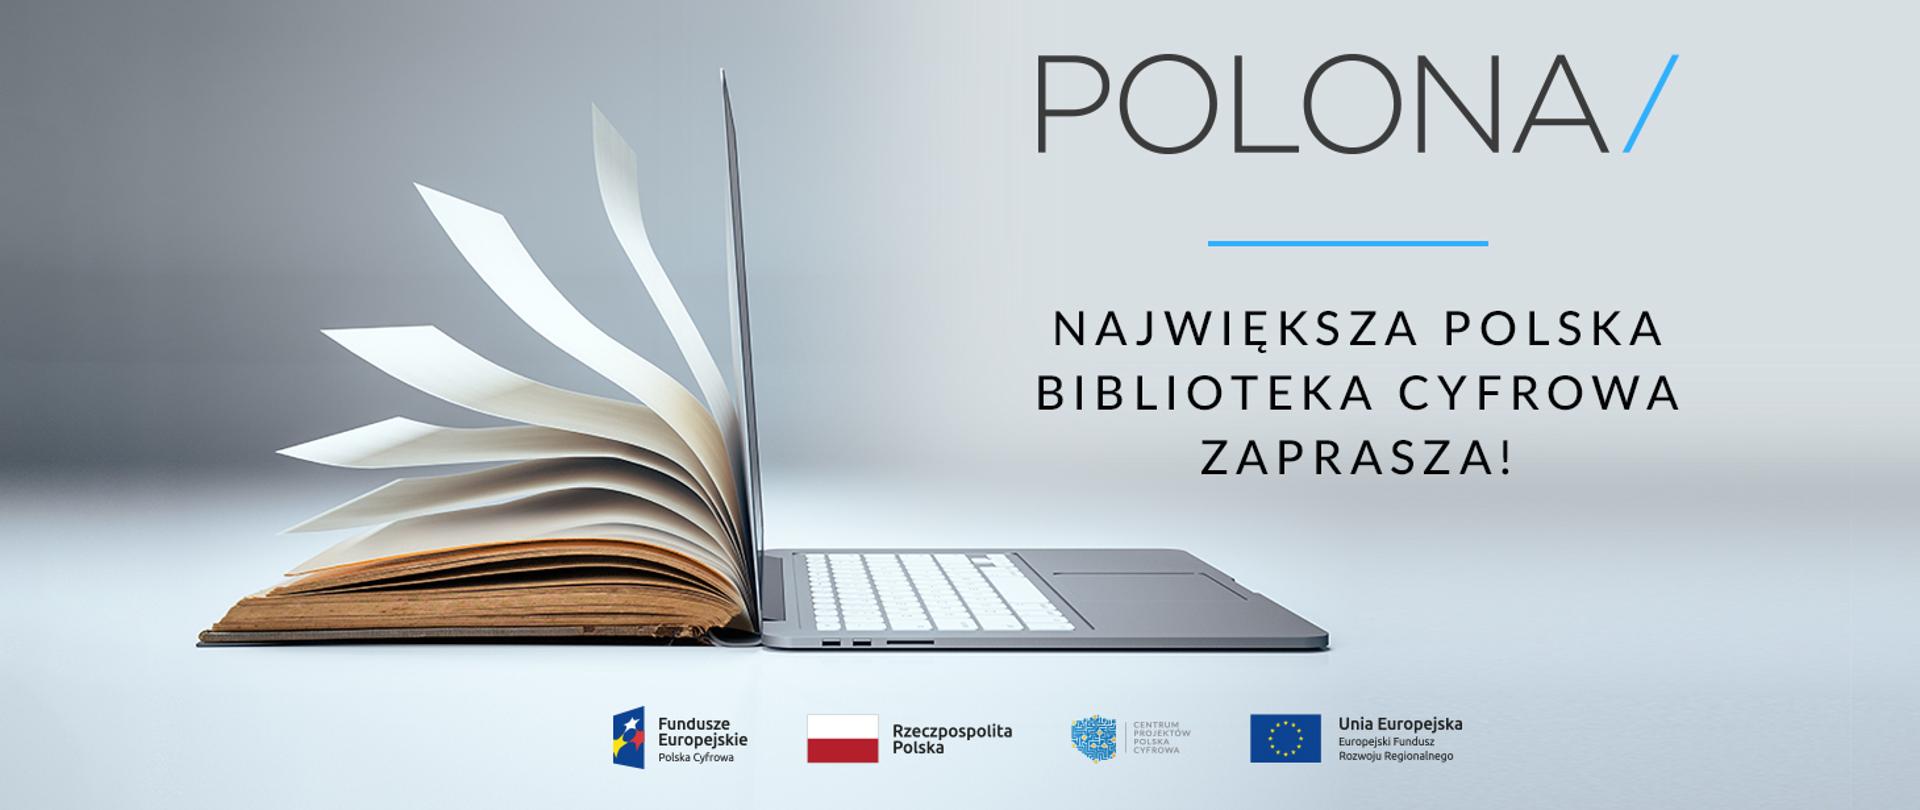 Polona - największa polska biblioteka cyfrowa zaprasza!